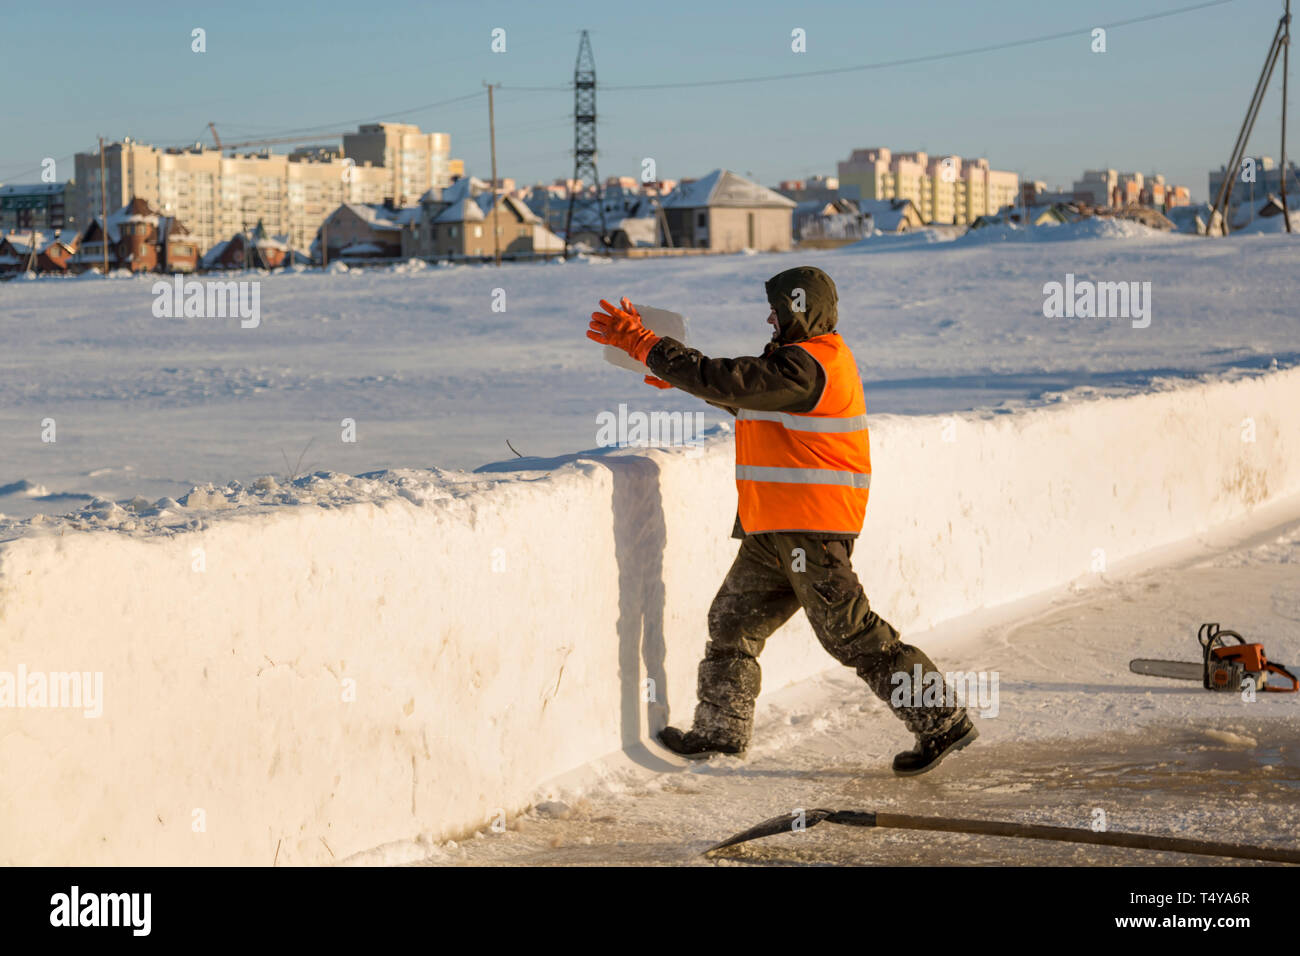 Un trabajador en un chaleco reflectante naranja lanza un bloque de hielo sobre un montículo de nieve. Foto de stock